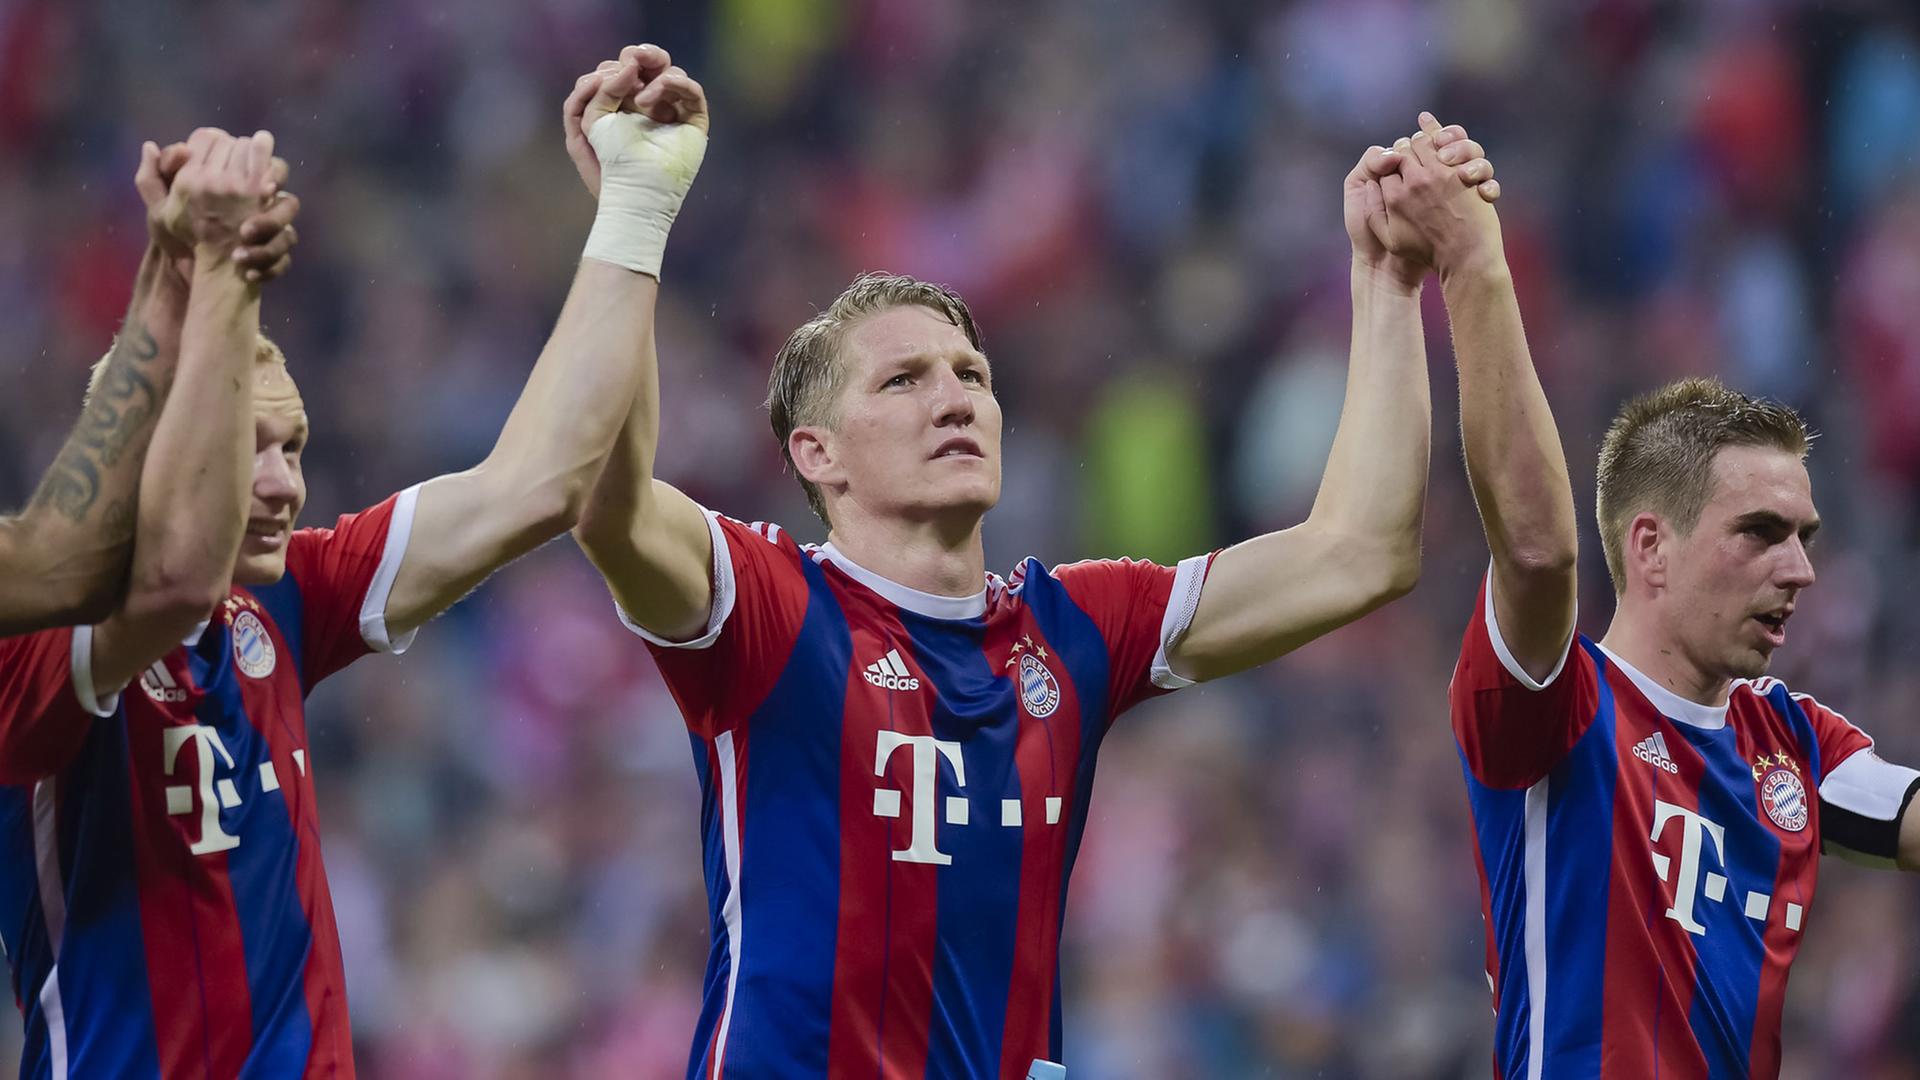 Die Bayern-Spieler Bastian Schweinsteiger (mitte) und Philipp Lahm (rechts) jubeln nach dem 1:0-Sieg gegen Herta BSC und strecken die Hände hoch.